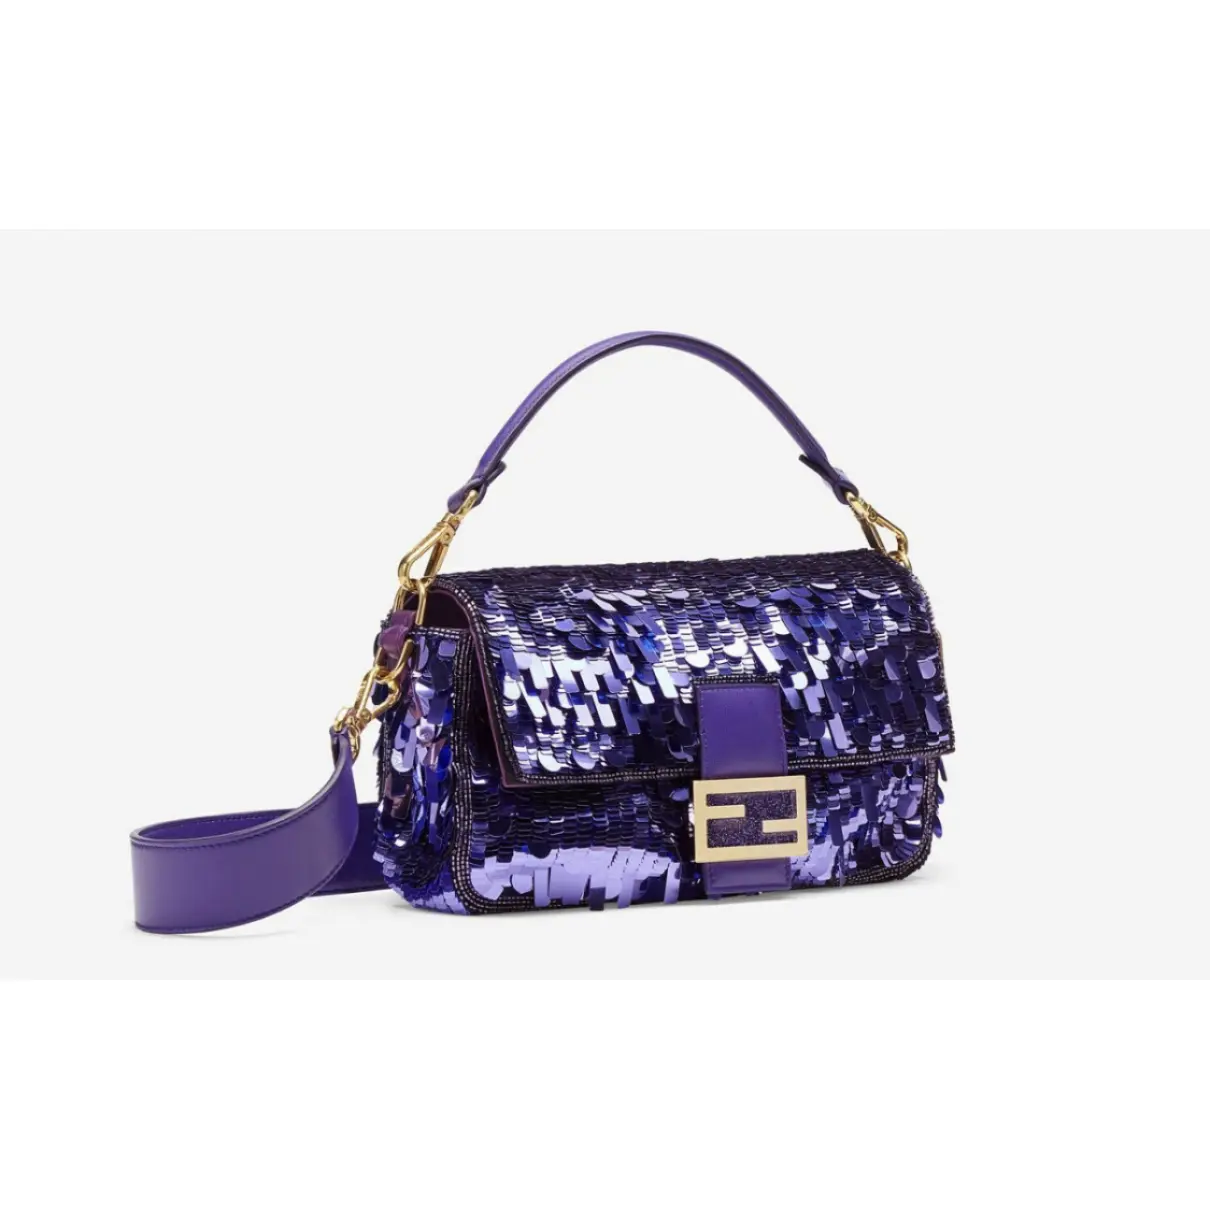 Buy Fendi Baguette glitter handbag online